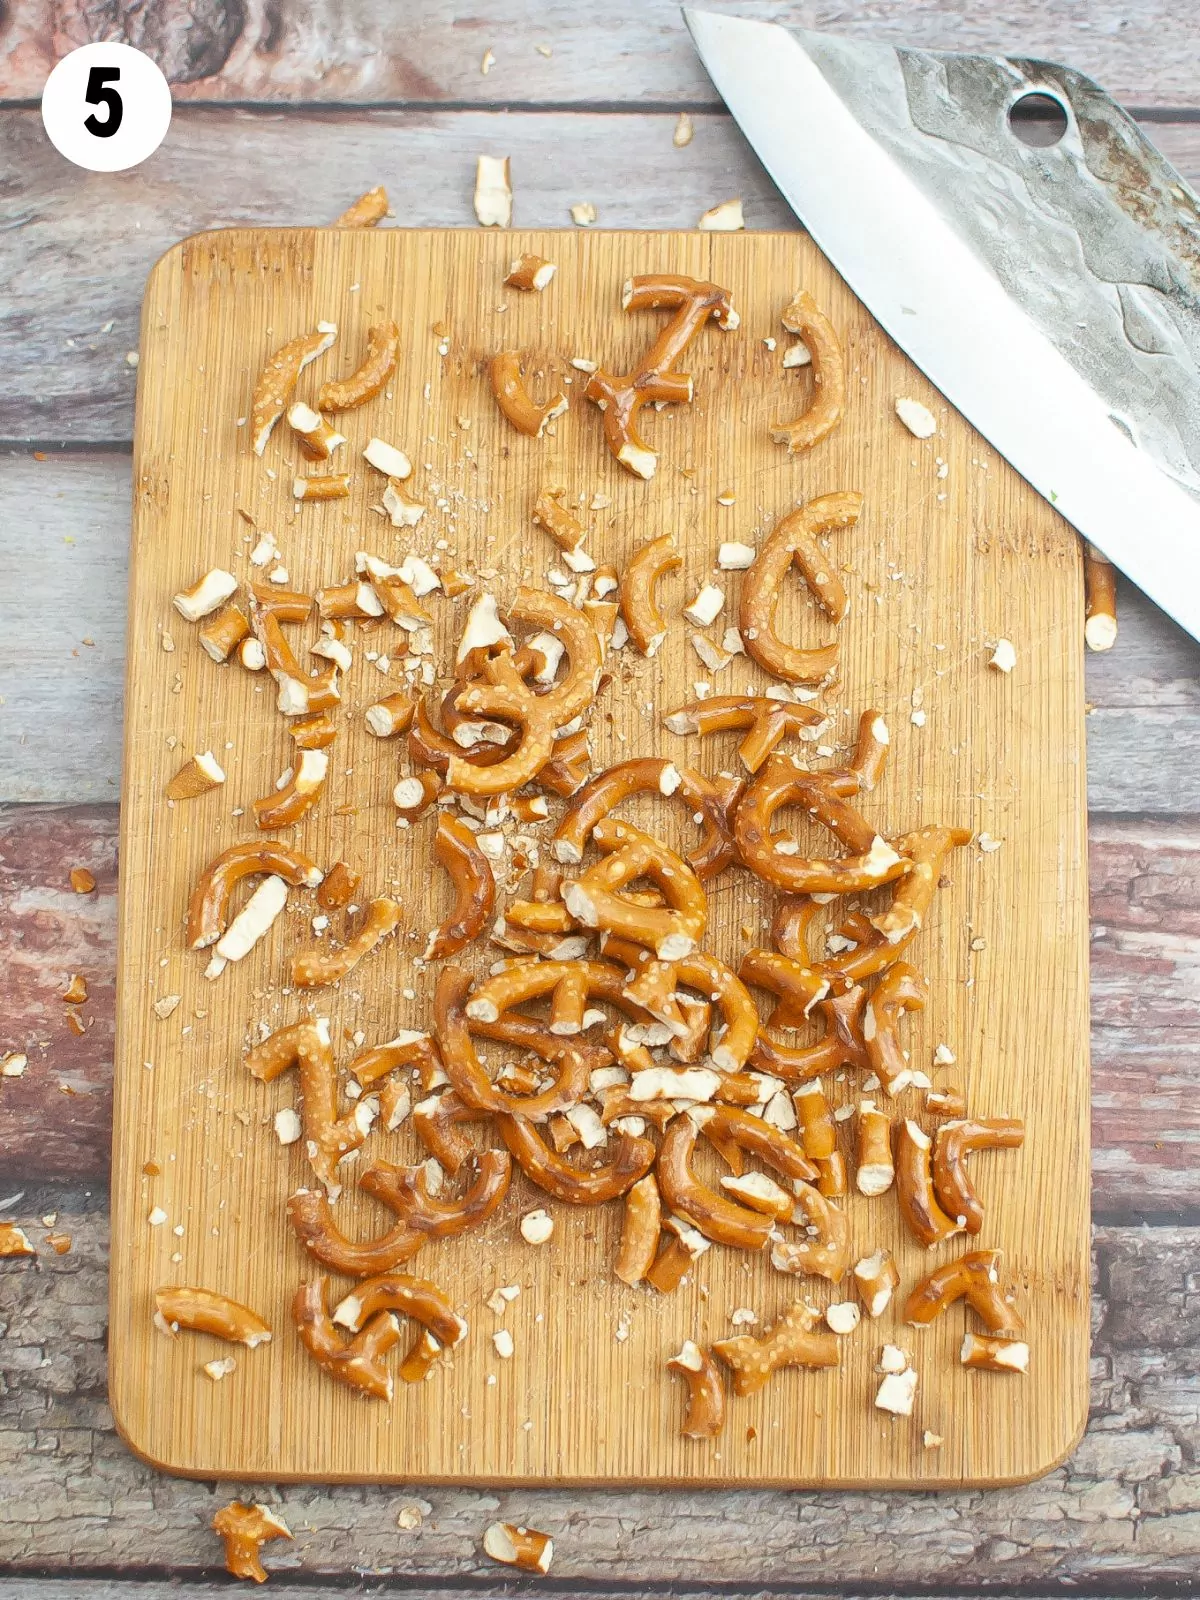 chopped pretzels on cutting board.